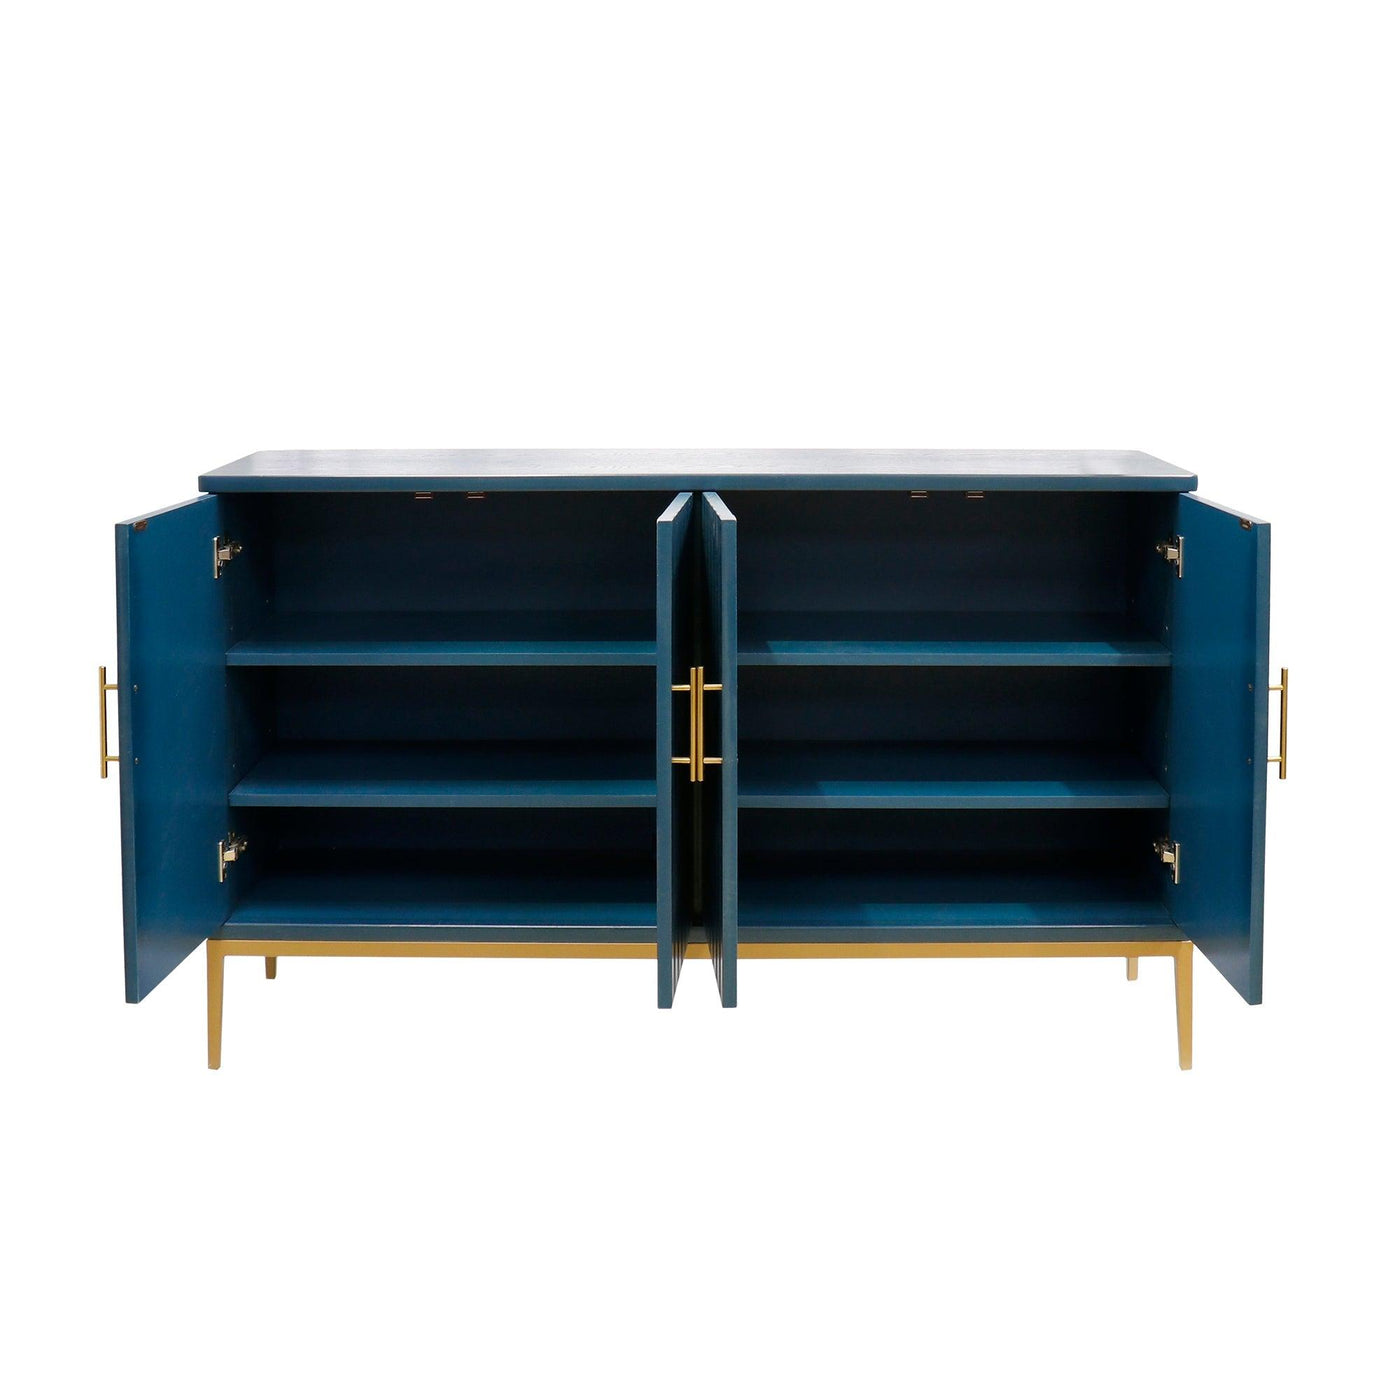 Canvello Edgar Teal Sideboard, 4 Doors, 6 Shelf & Gold Polished Metal Frame